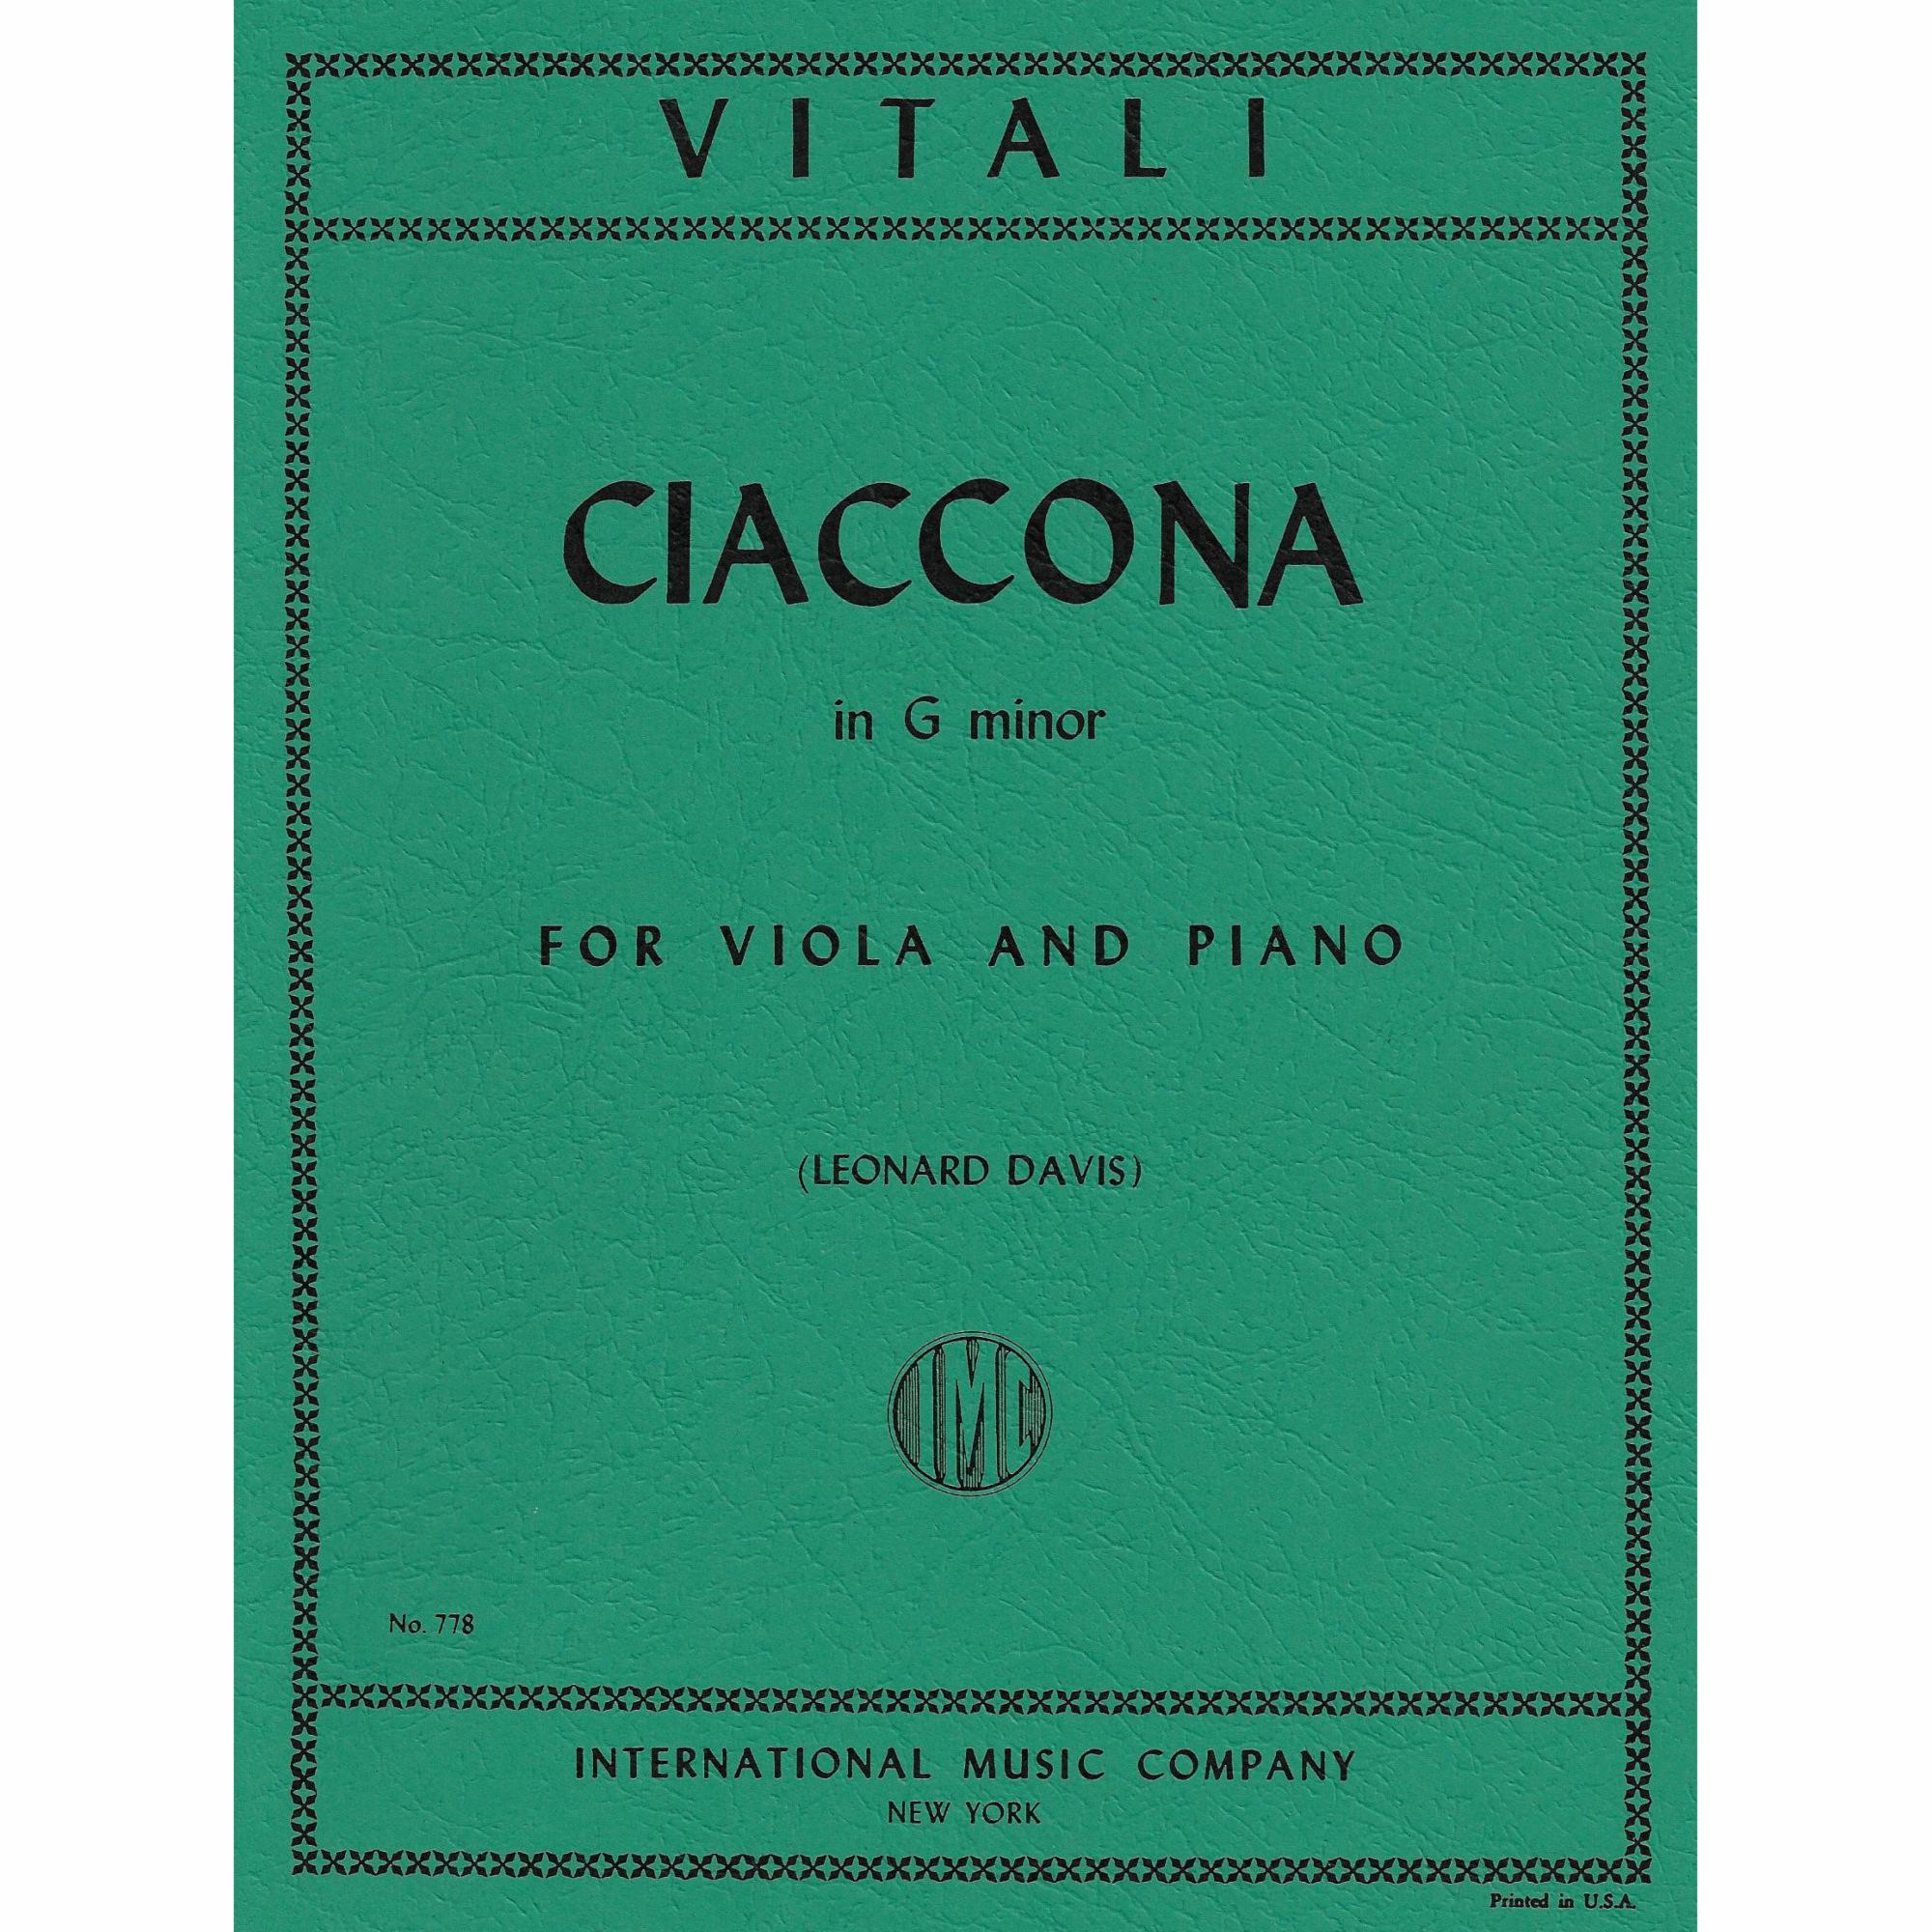 Vitali -- Ciaconna in G Minor for Viola and Piano